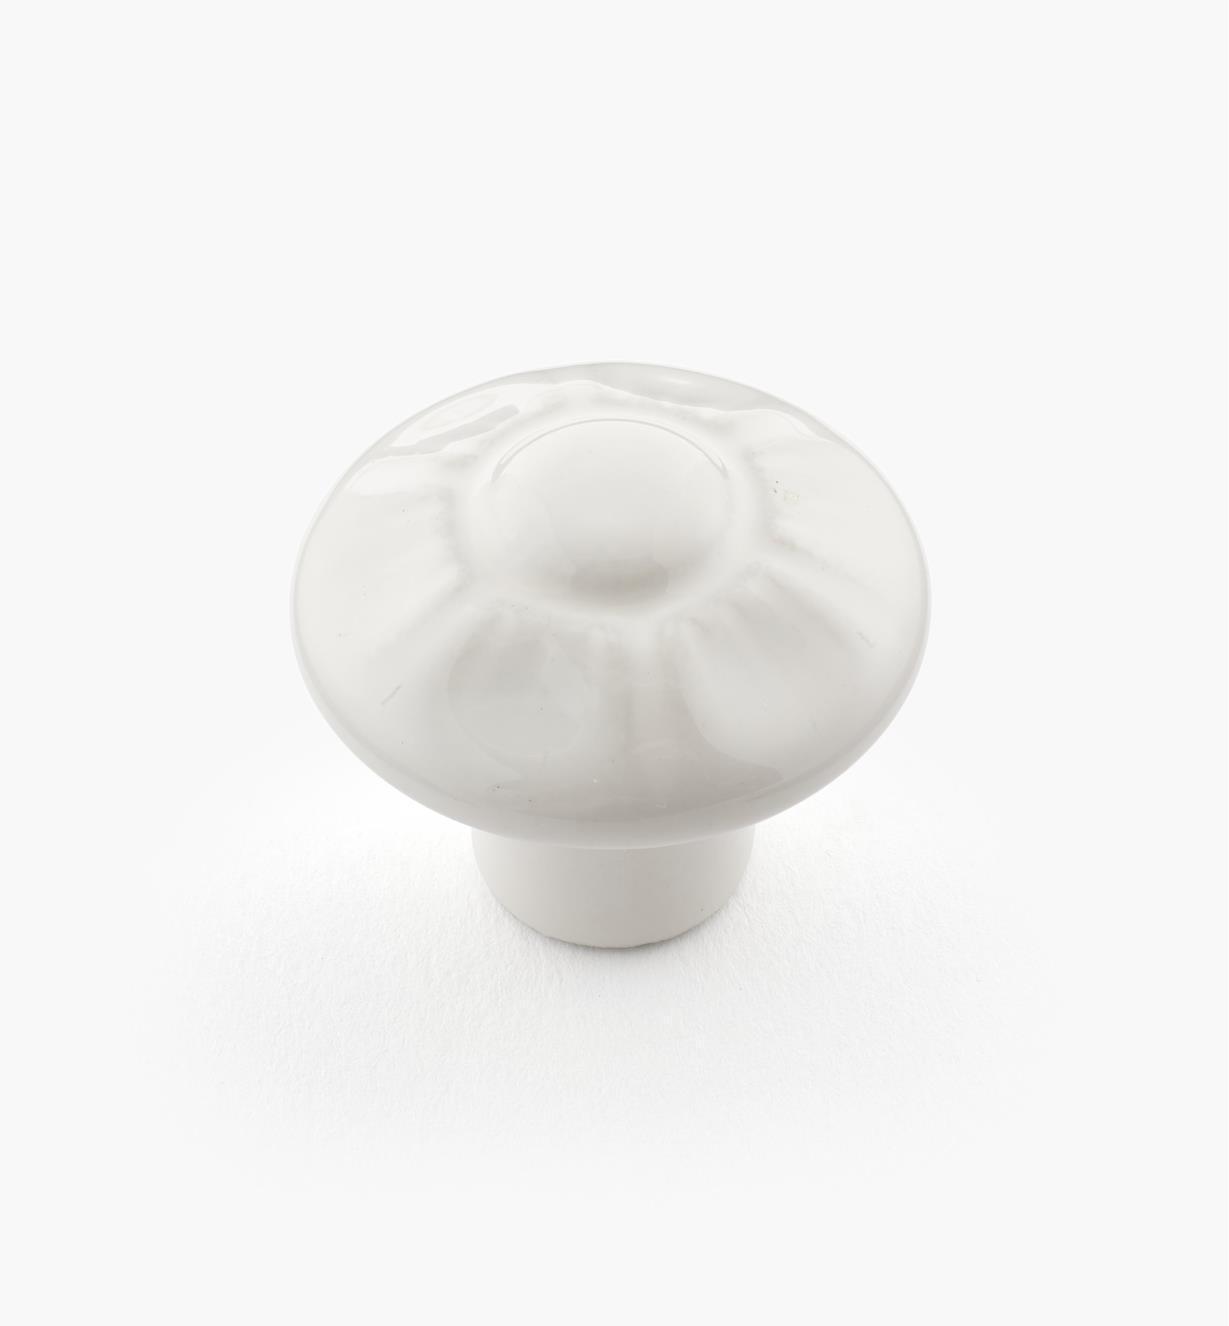 00W1330 - Sunburst Ceramic Knob